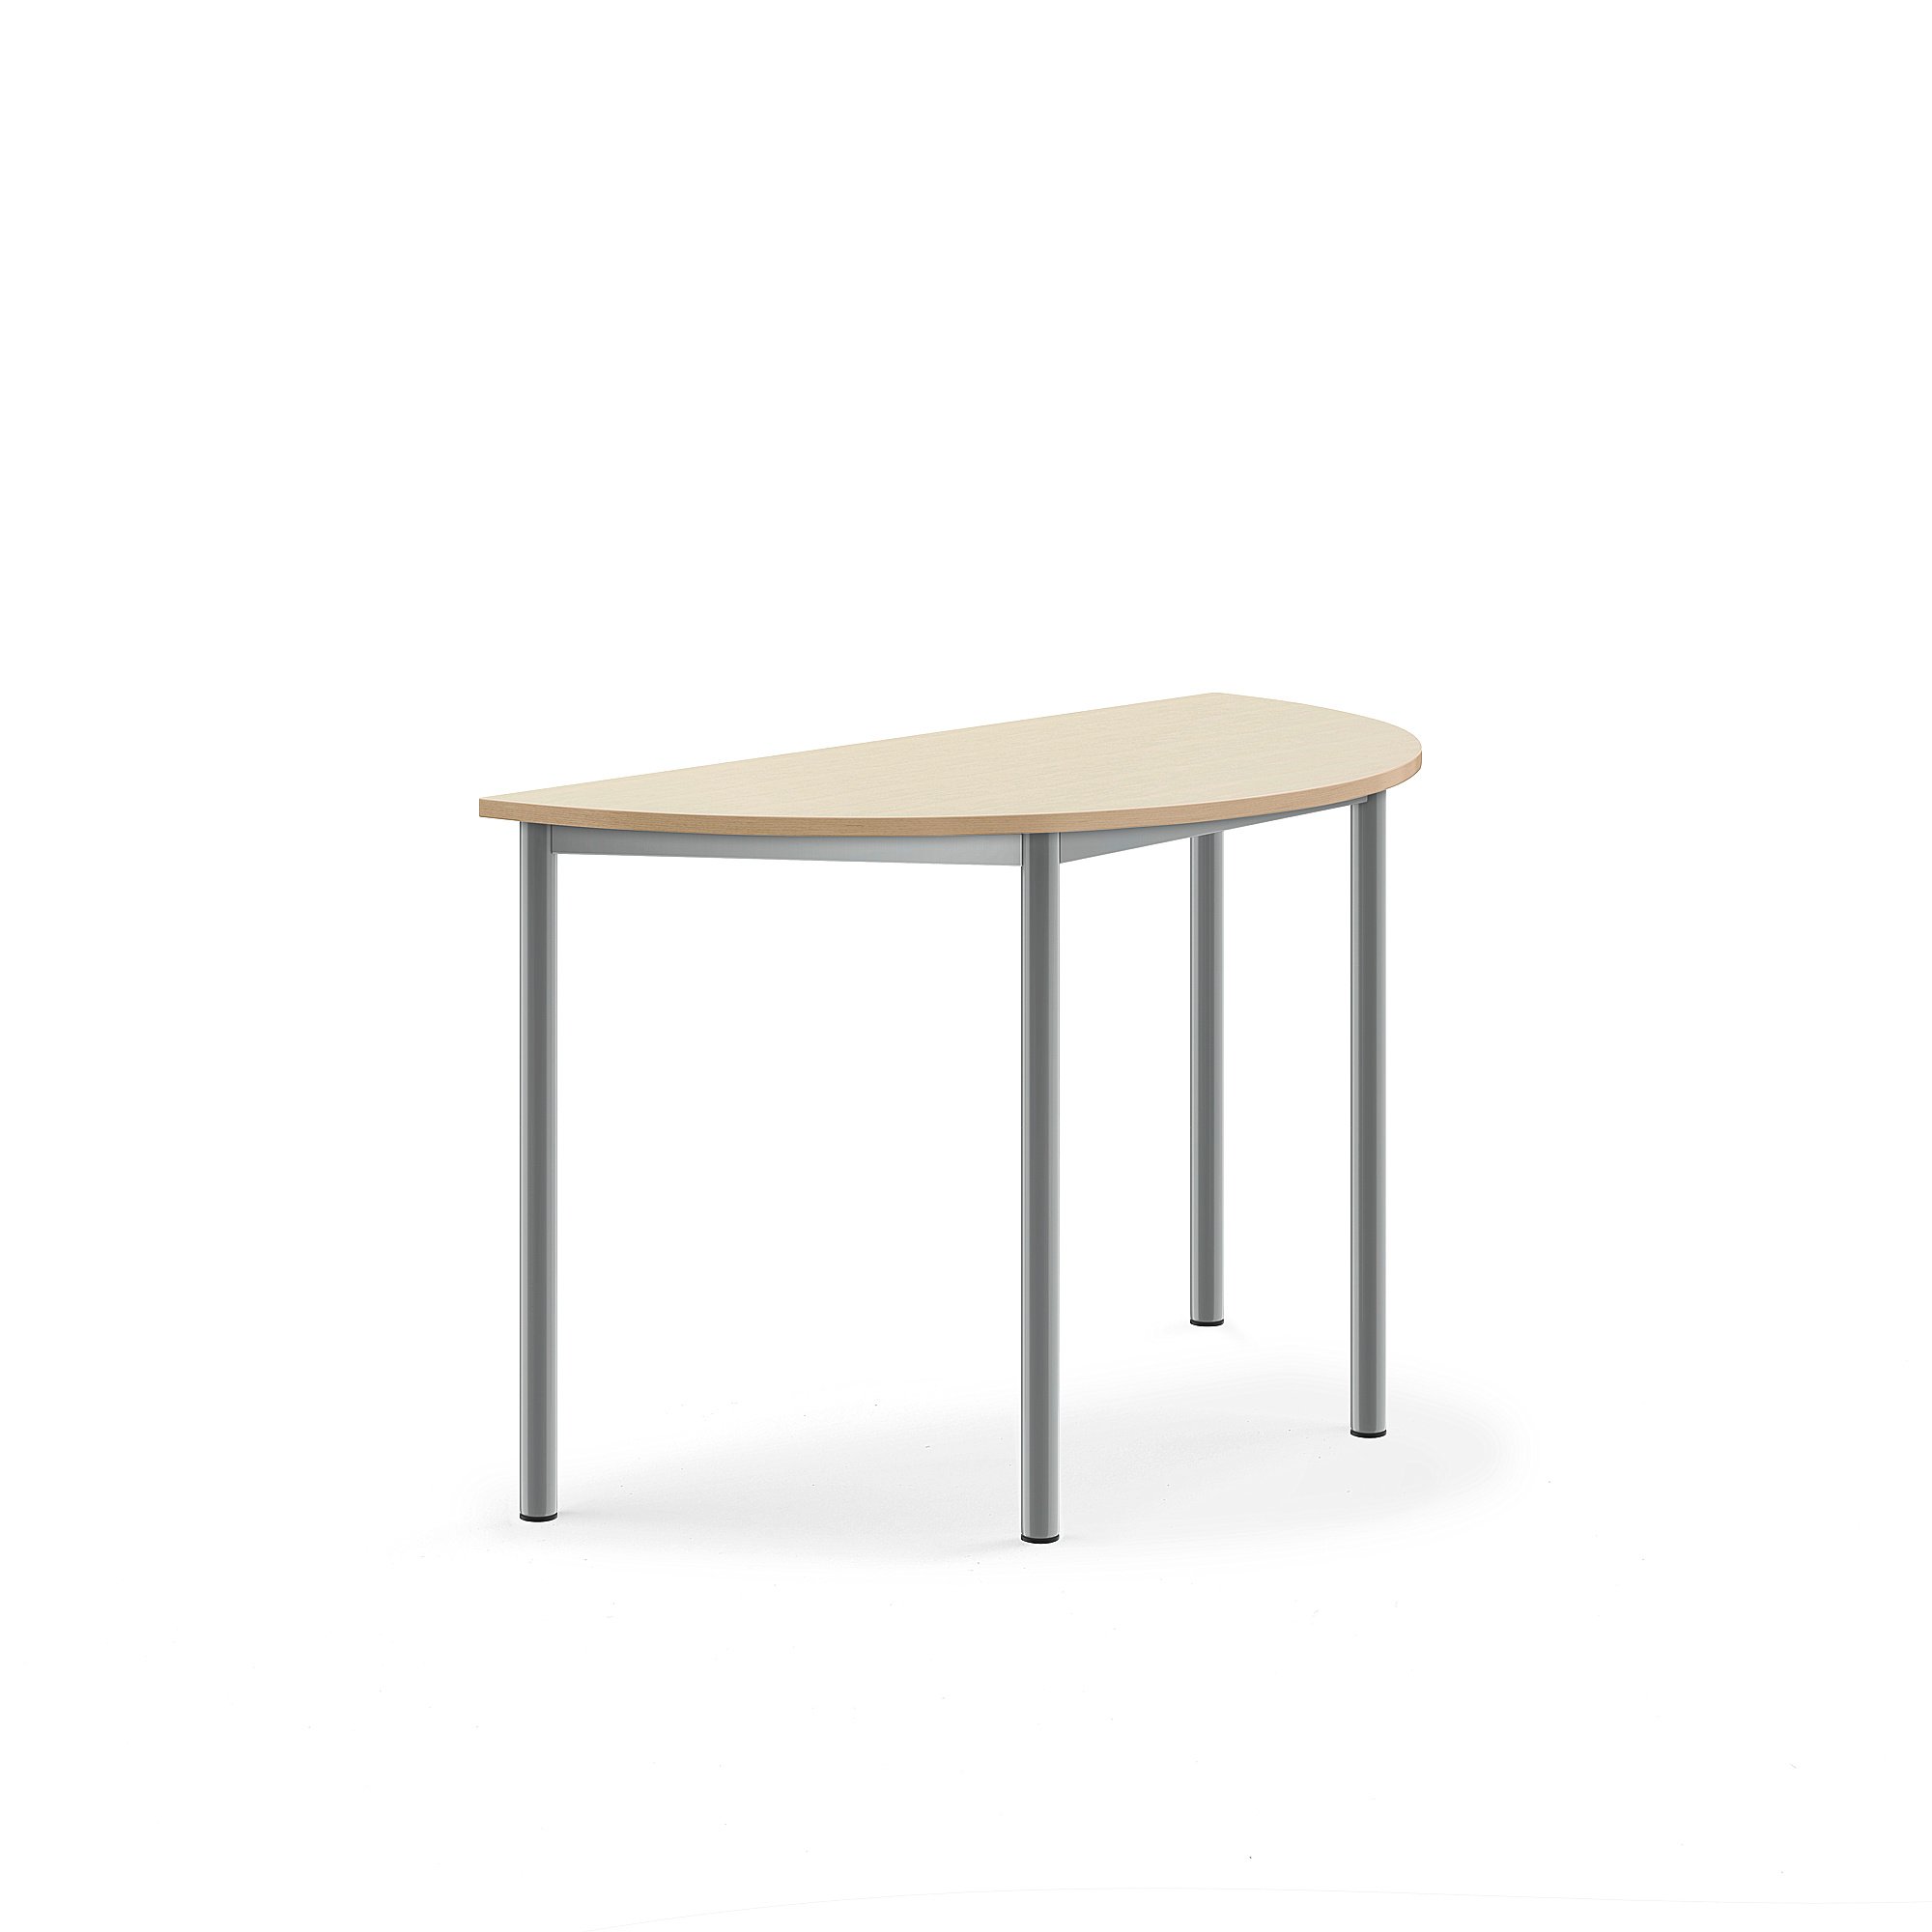 Stůl BORÅS, půlkruh, 1200x600x720 mm, stříbrné nohy,HPL deska, bříza